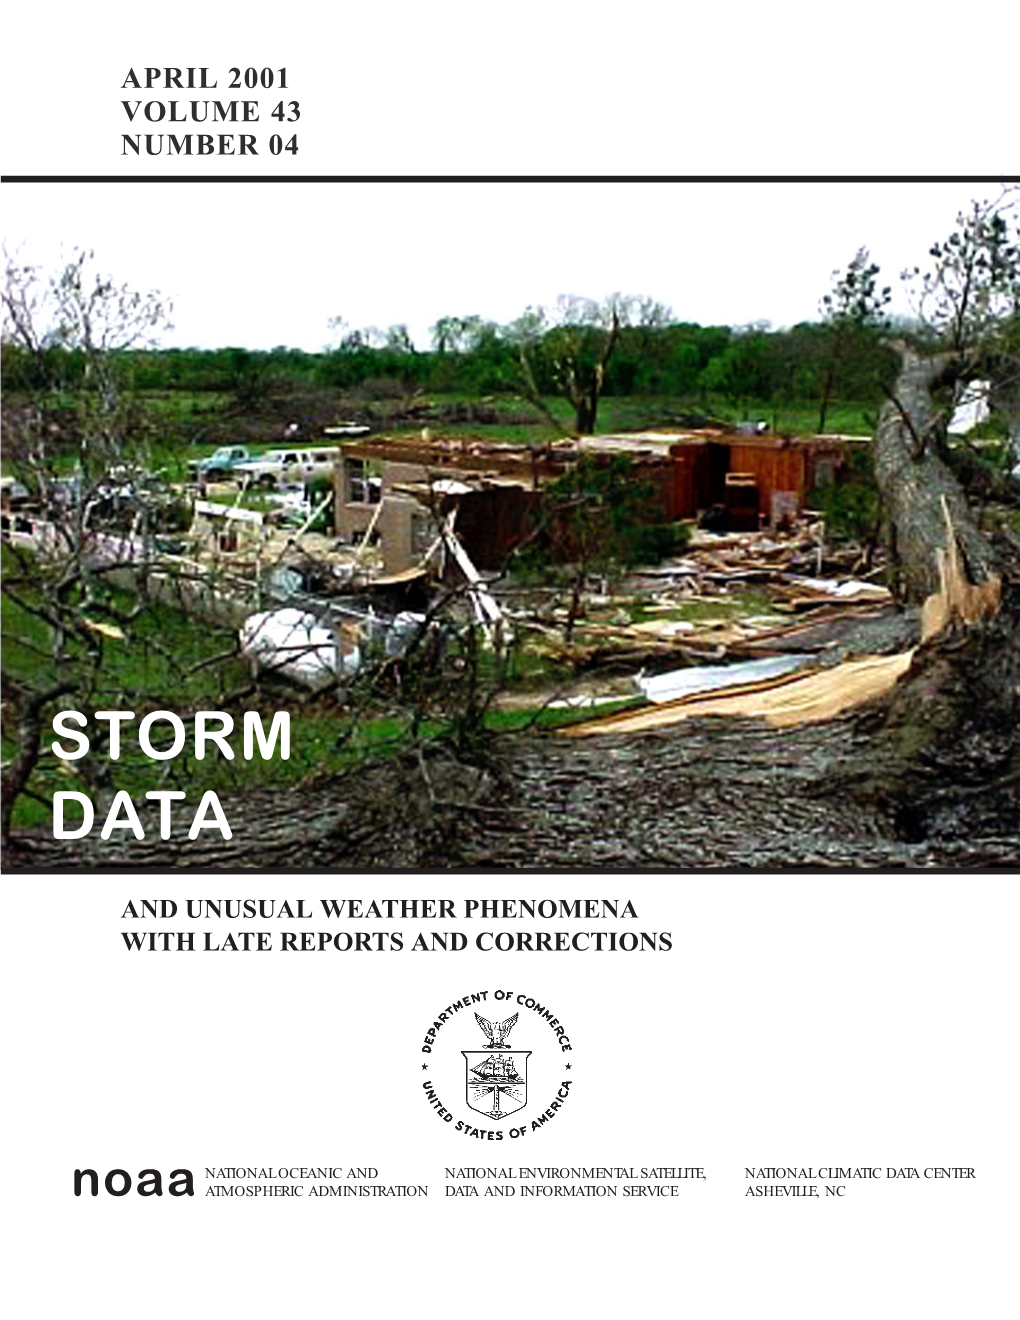 April 2001 Storm Data Publication